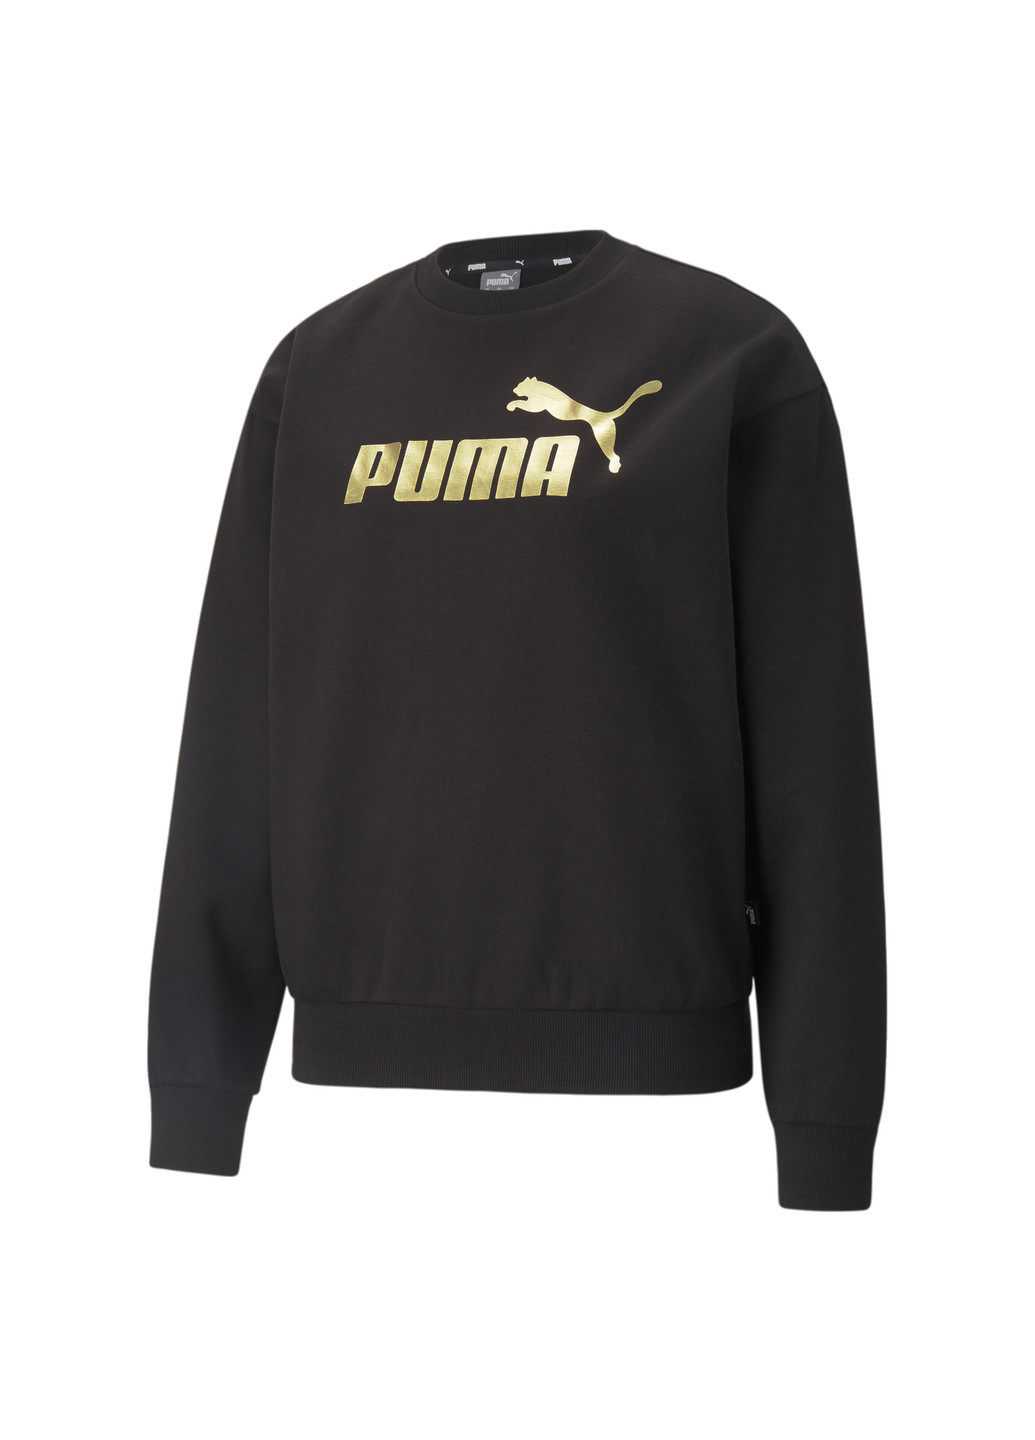 Свитшот Essentials+ Metallic Logo Crew Neck Women's Sweatshirt Puma однотонная чёрная спортивная хлопок, полиэстер, эластан